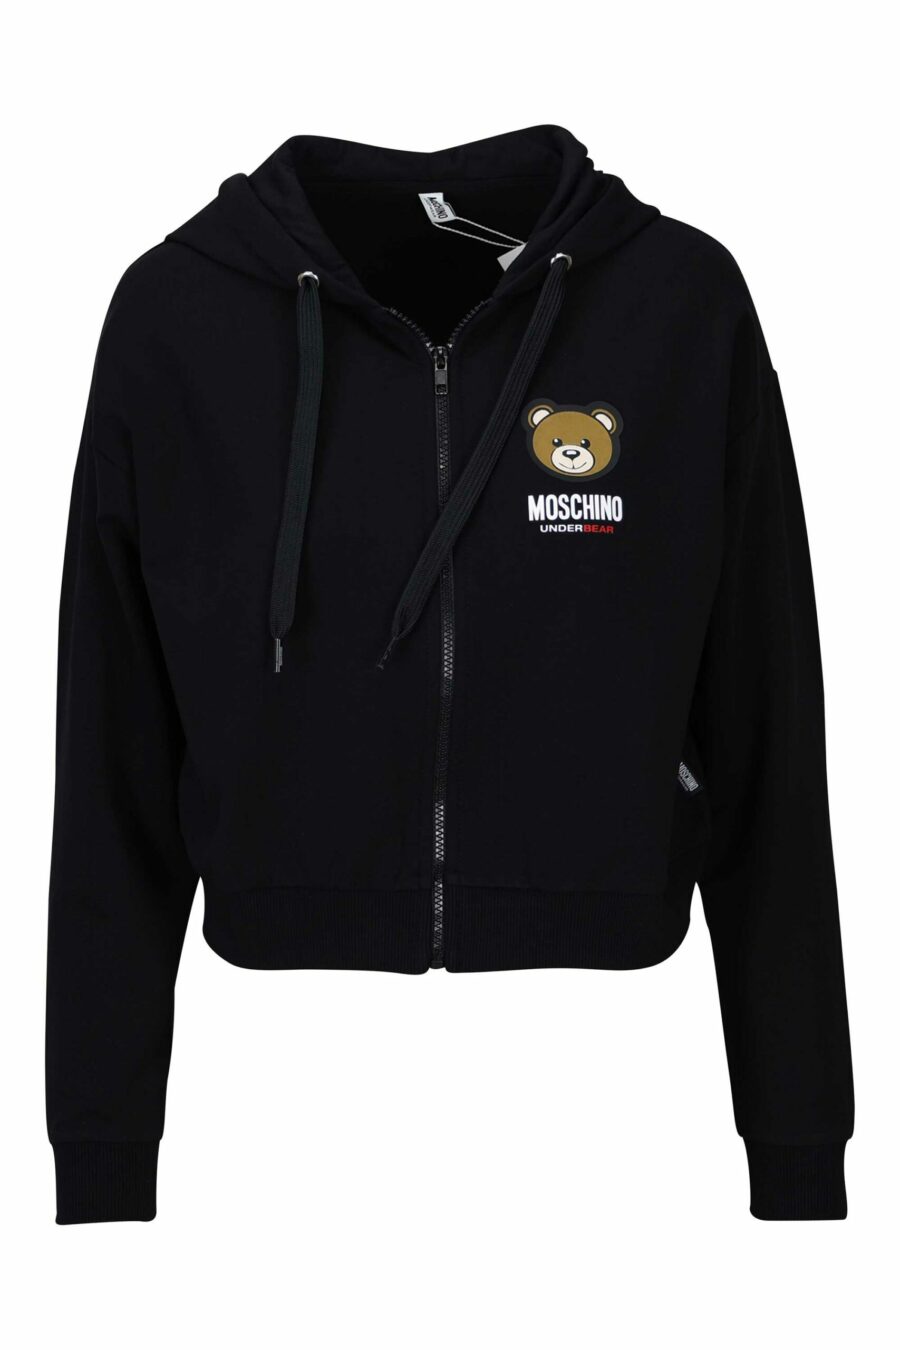 Schwarzes Kapuzensweatshirt mit Reißverschluss und Bärenlogoaufnäher "underbear" - 667113050751 skaliert